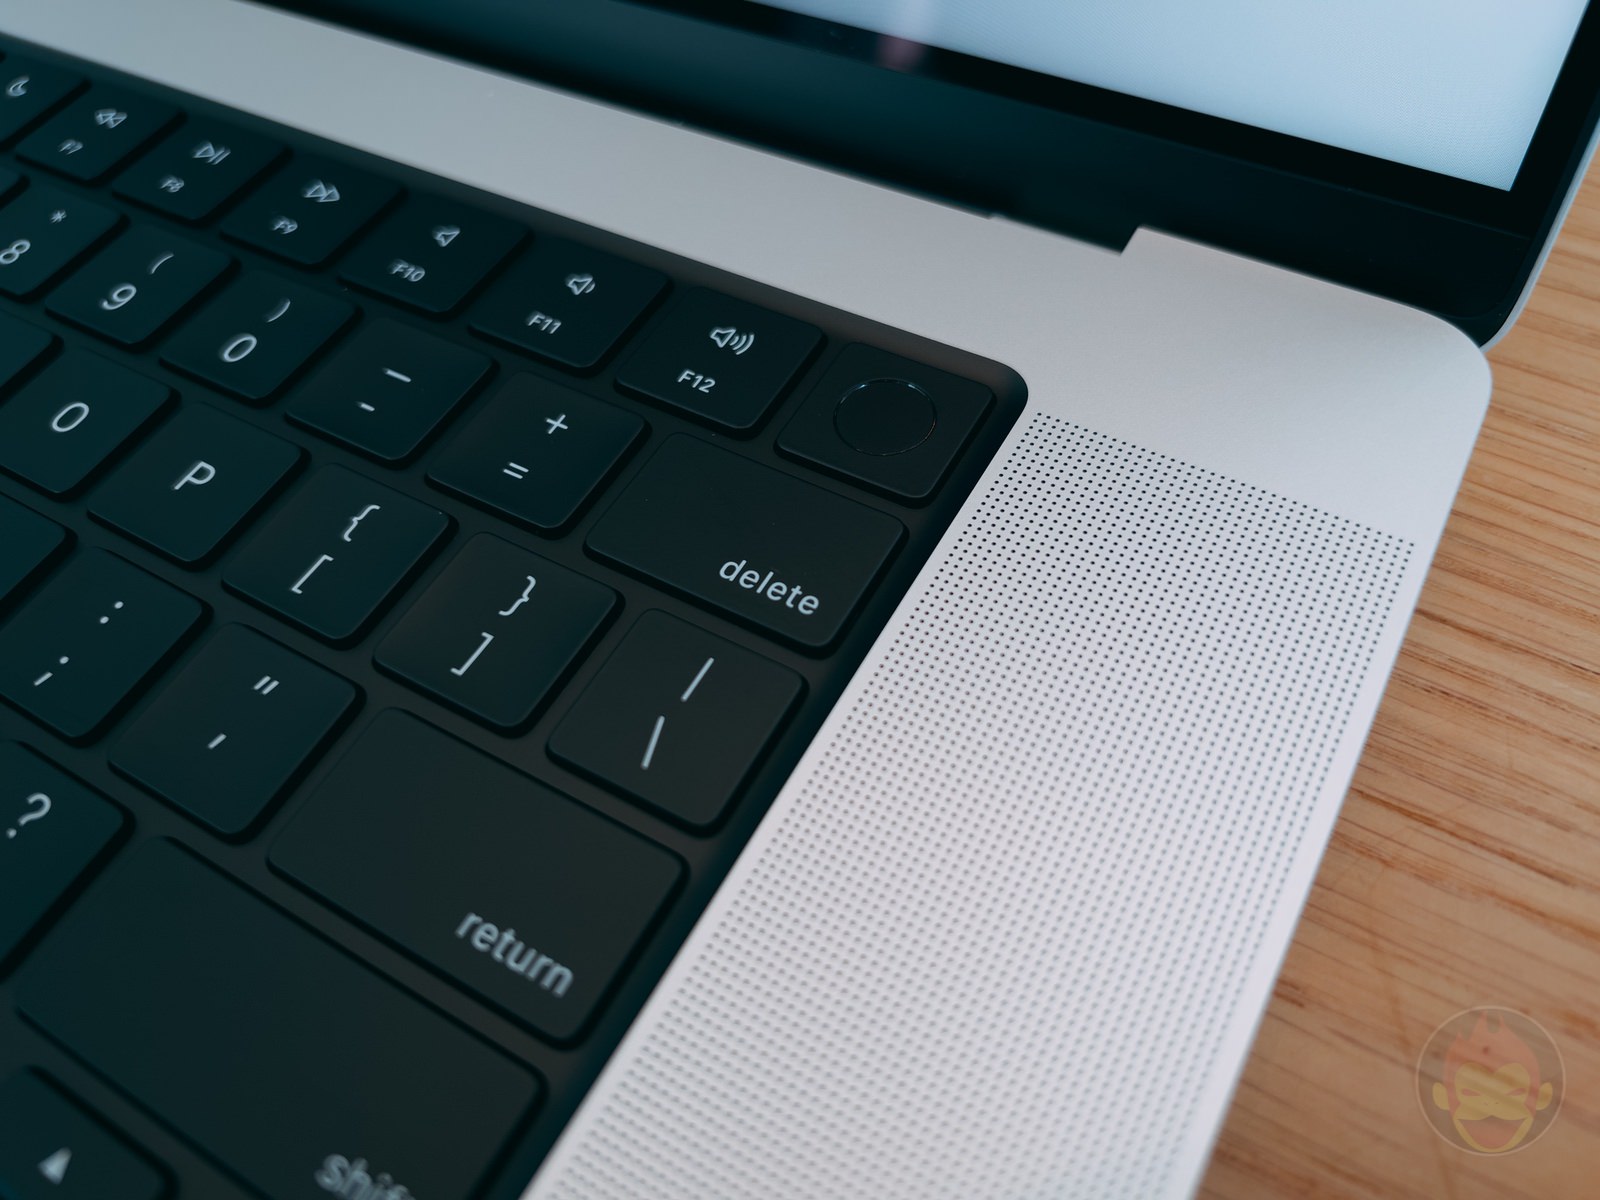 MacBookPro-16inch-2021-hands-on-02.jpg